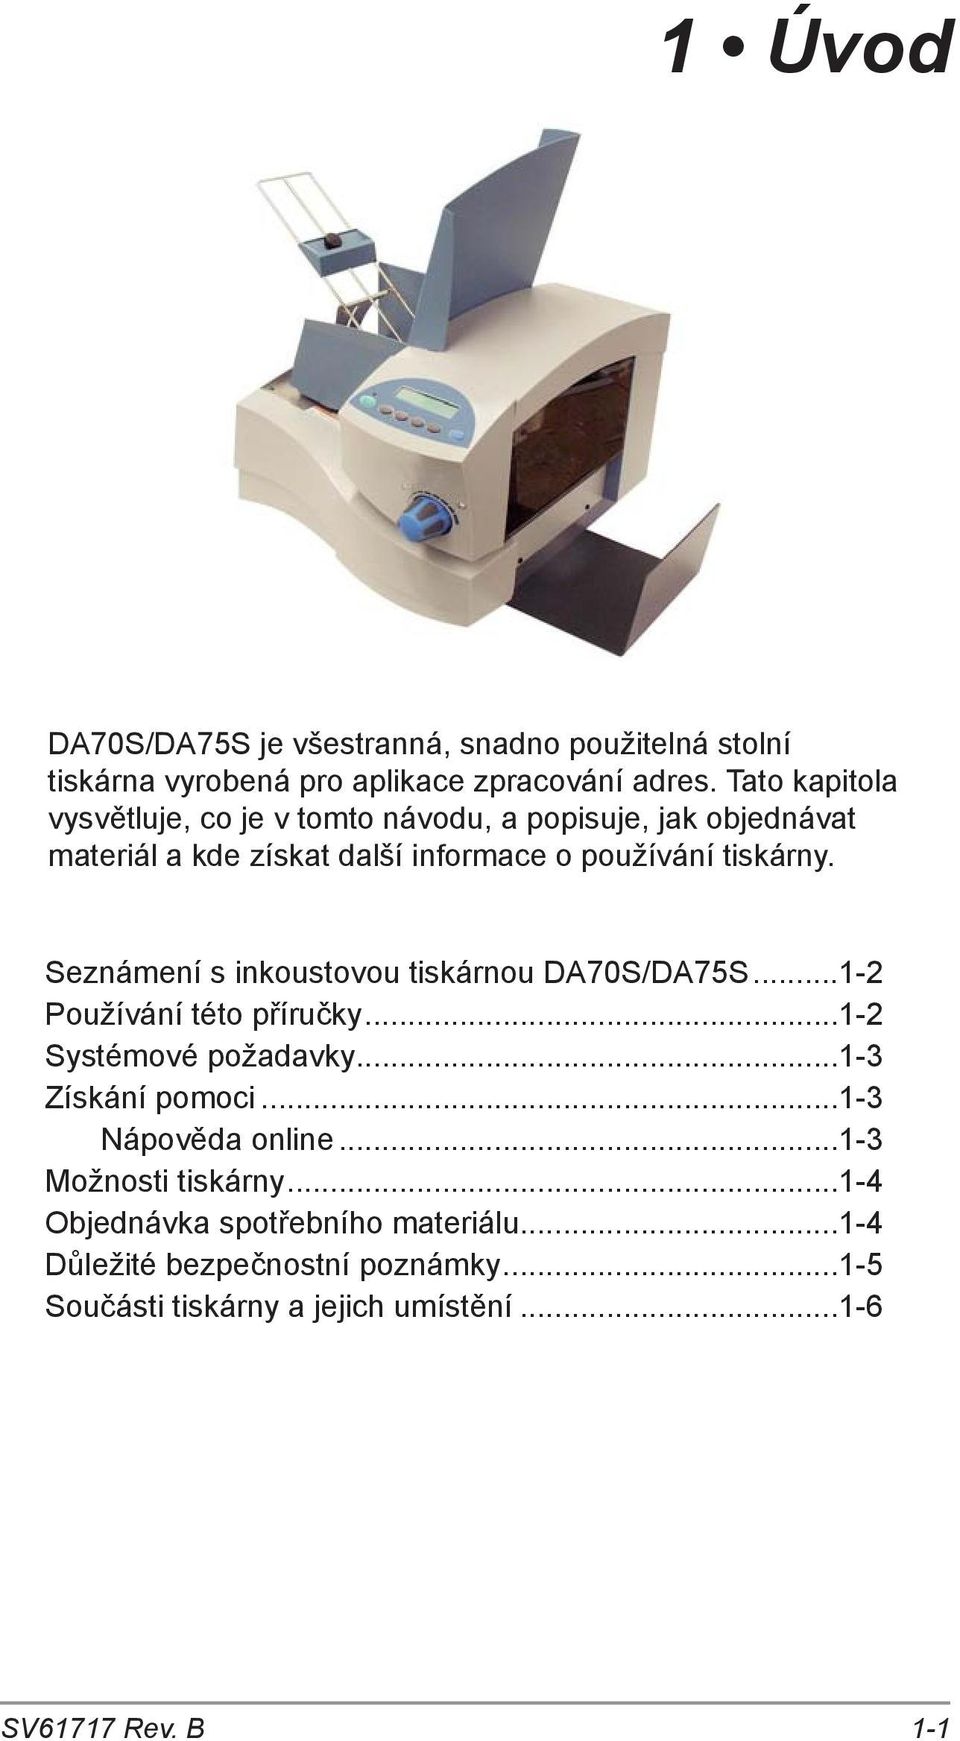 Seznámení s inkoustovou tiskárnou DA70S/DA75S...1-2 Používání této příručky...1-2 Systémové požadavky...1-3 Získání pomoci.